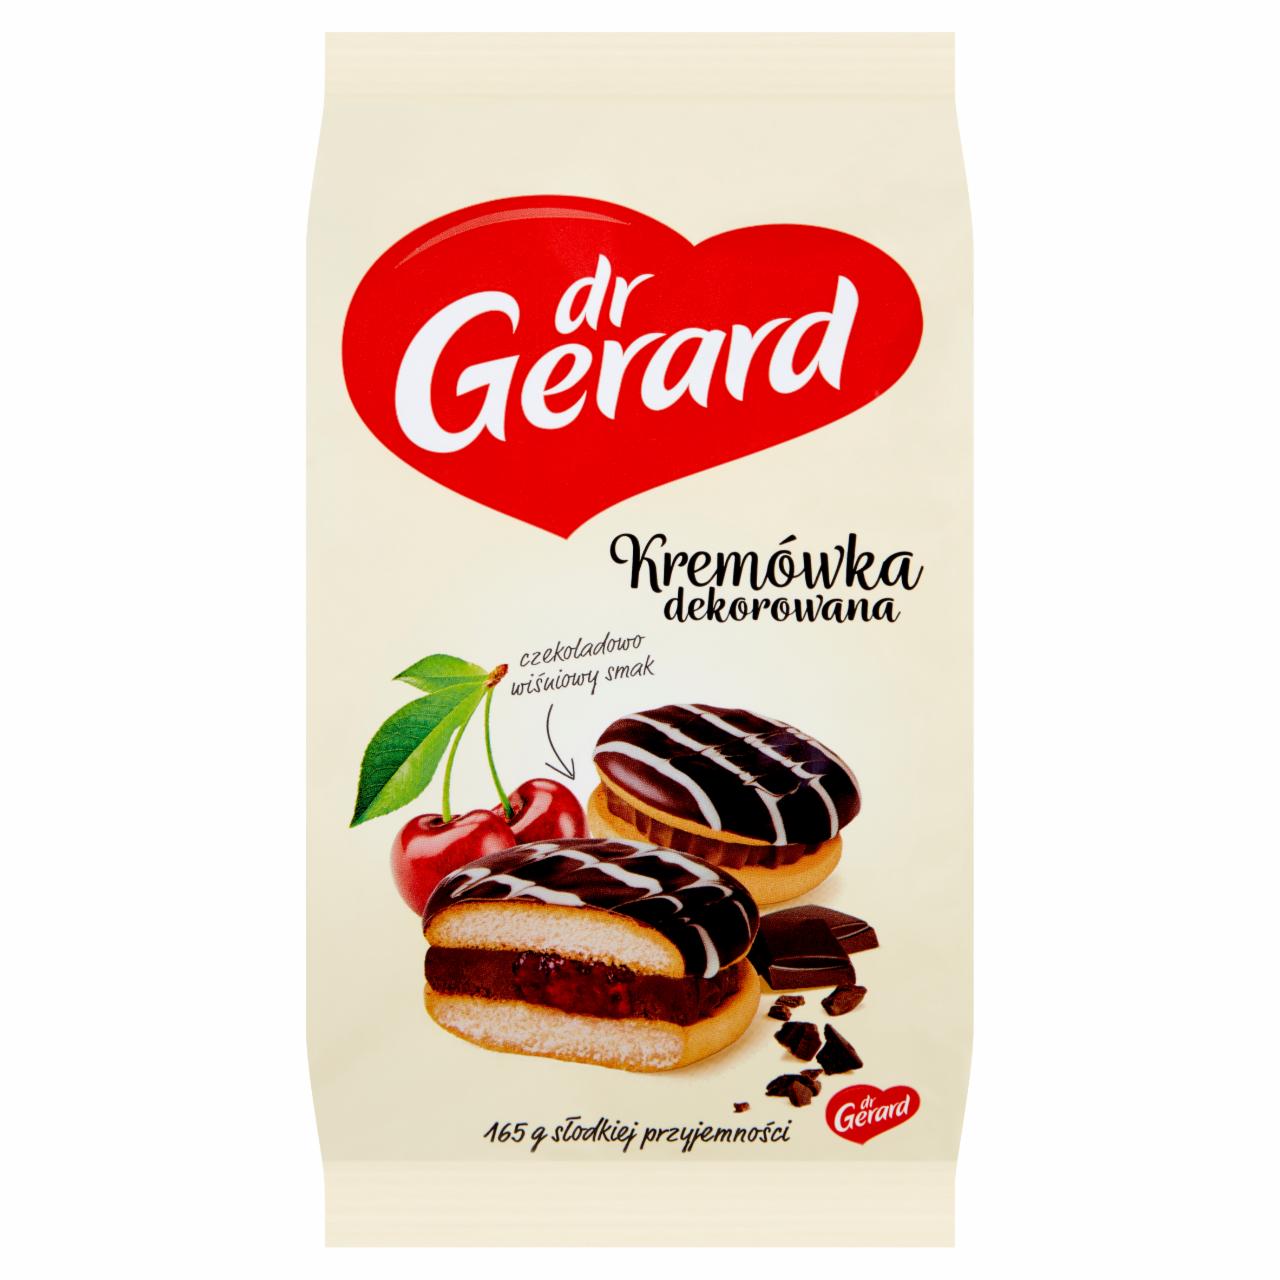 Zdjęcia - dr Gerard Kremówka dekorowana czekoladowo wiśniowy smak 165 g